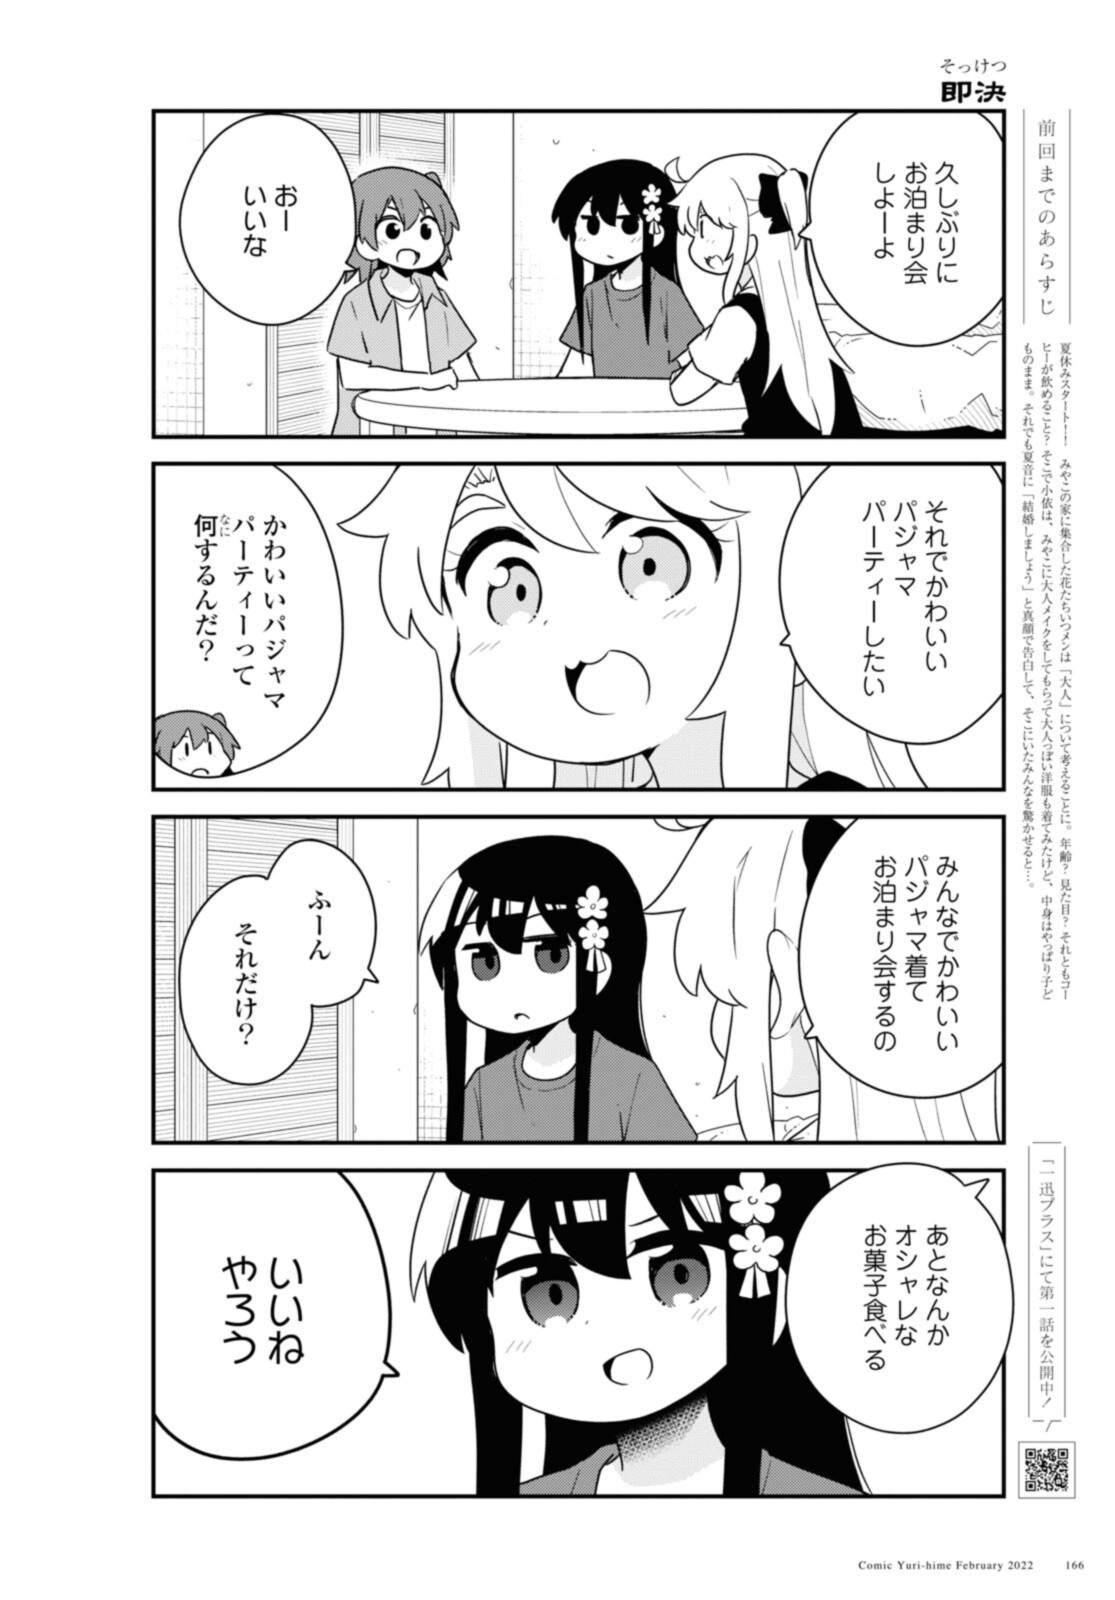 Watashi ni Tenshi ga Maiorita! - Chapter 92 - Page 2